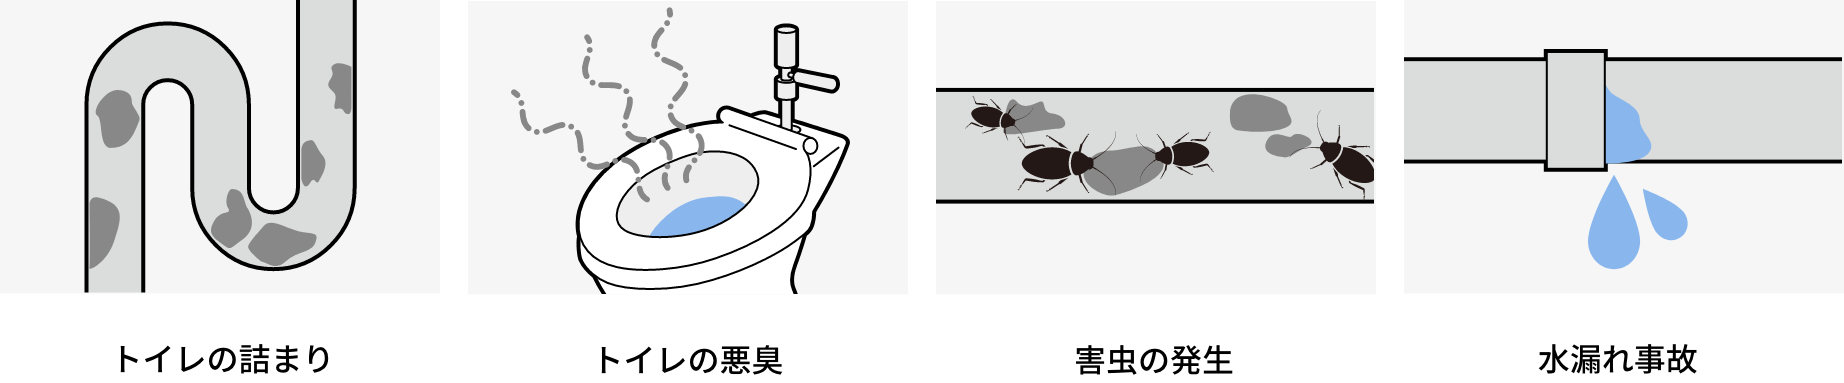 トイレの詰まり、トイレの悪臭、害虫の発生、水漏れ事故